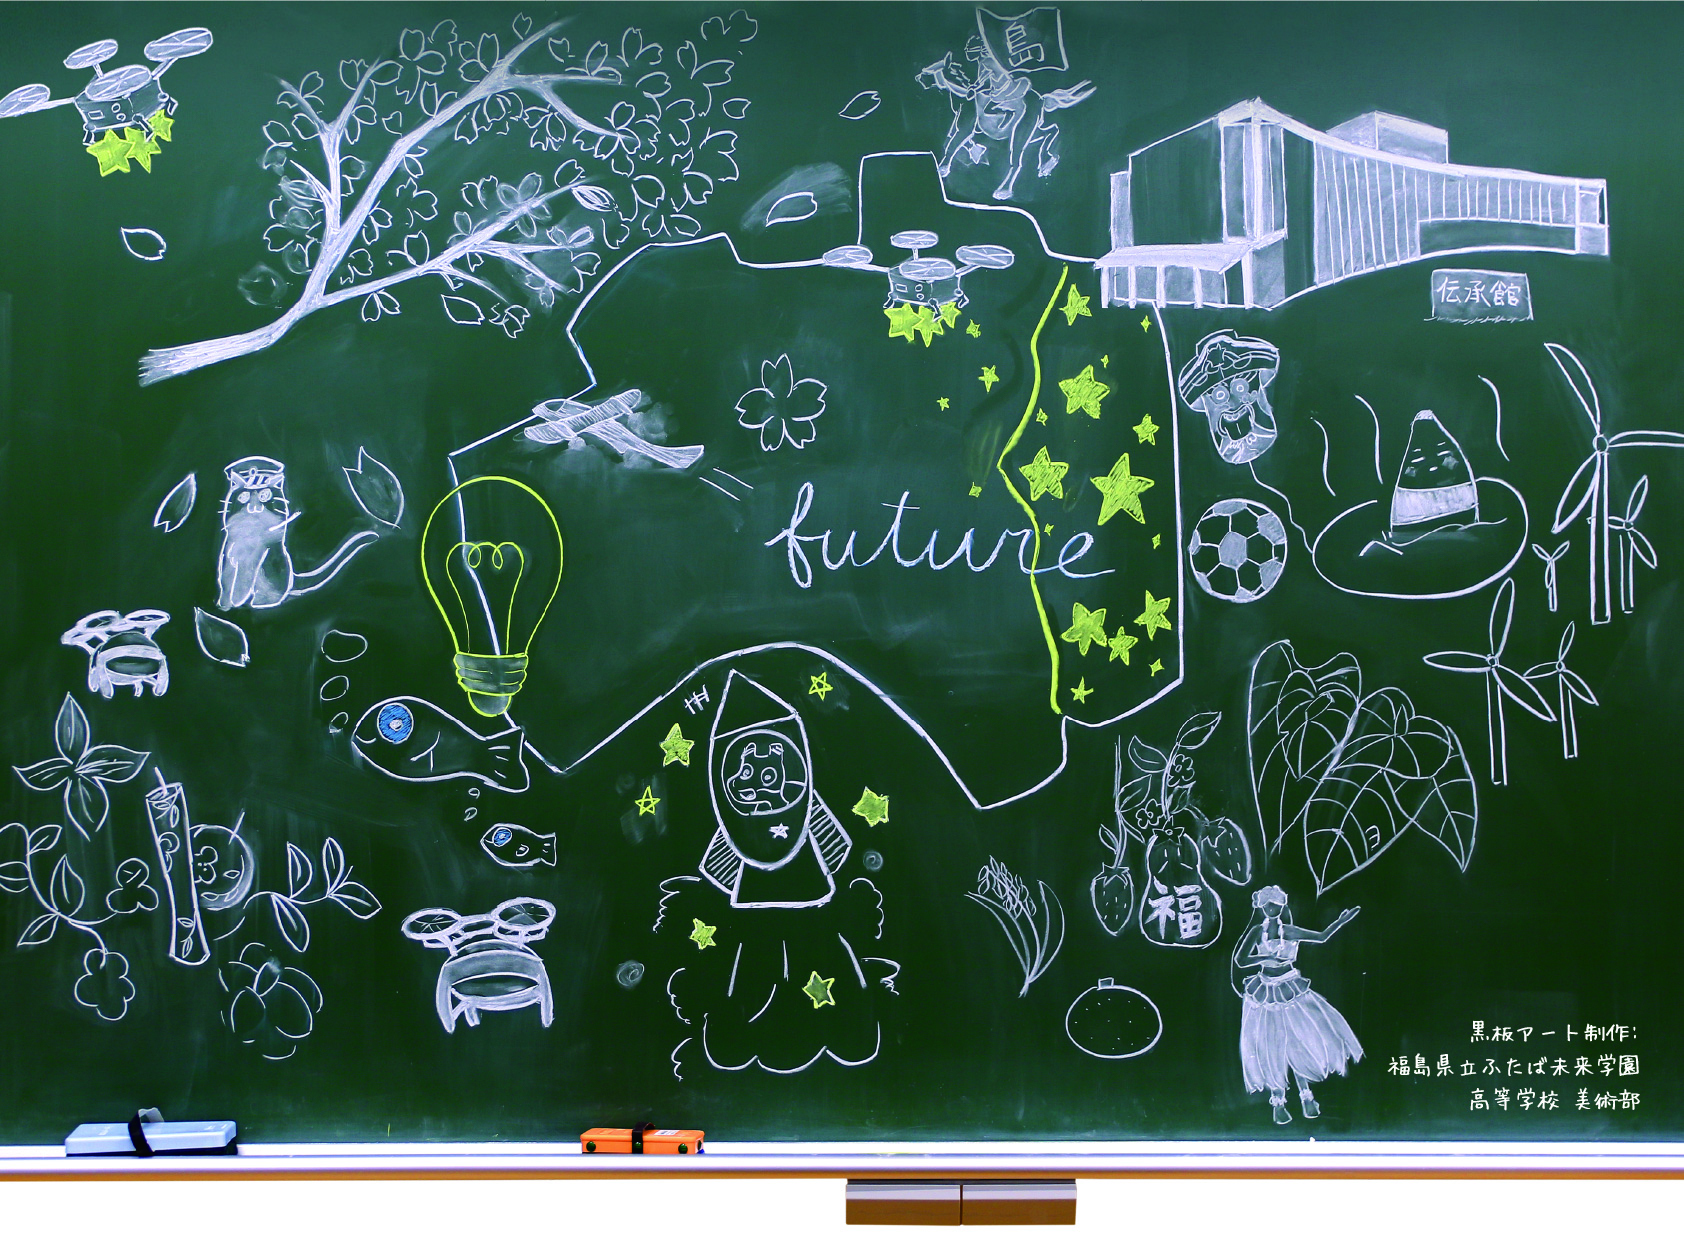 黒板アート制作:福島県立ふたば未来学園 高等学校 美術部